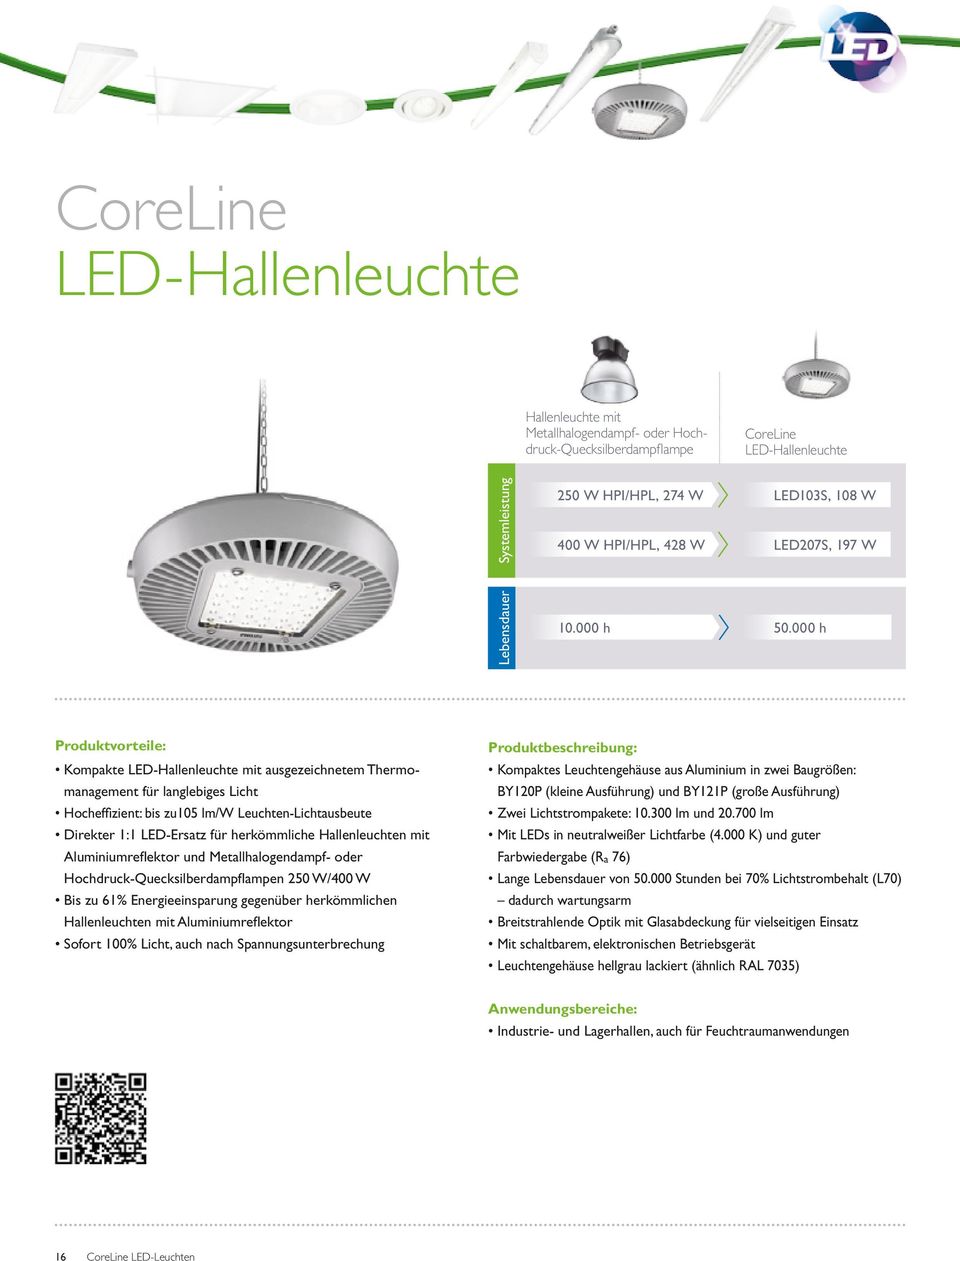 000 h Produktvorteile: Kompakte LED-Hallenleuchte mit ausgezeichnetem Thermomanagement für langlebiges Licht Hocheffizient: bis zu105 lm/w Lichtausbeute Direkter 1:1 LED-Ersatz für herkömmliche